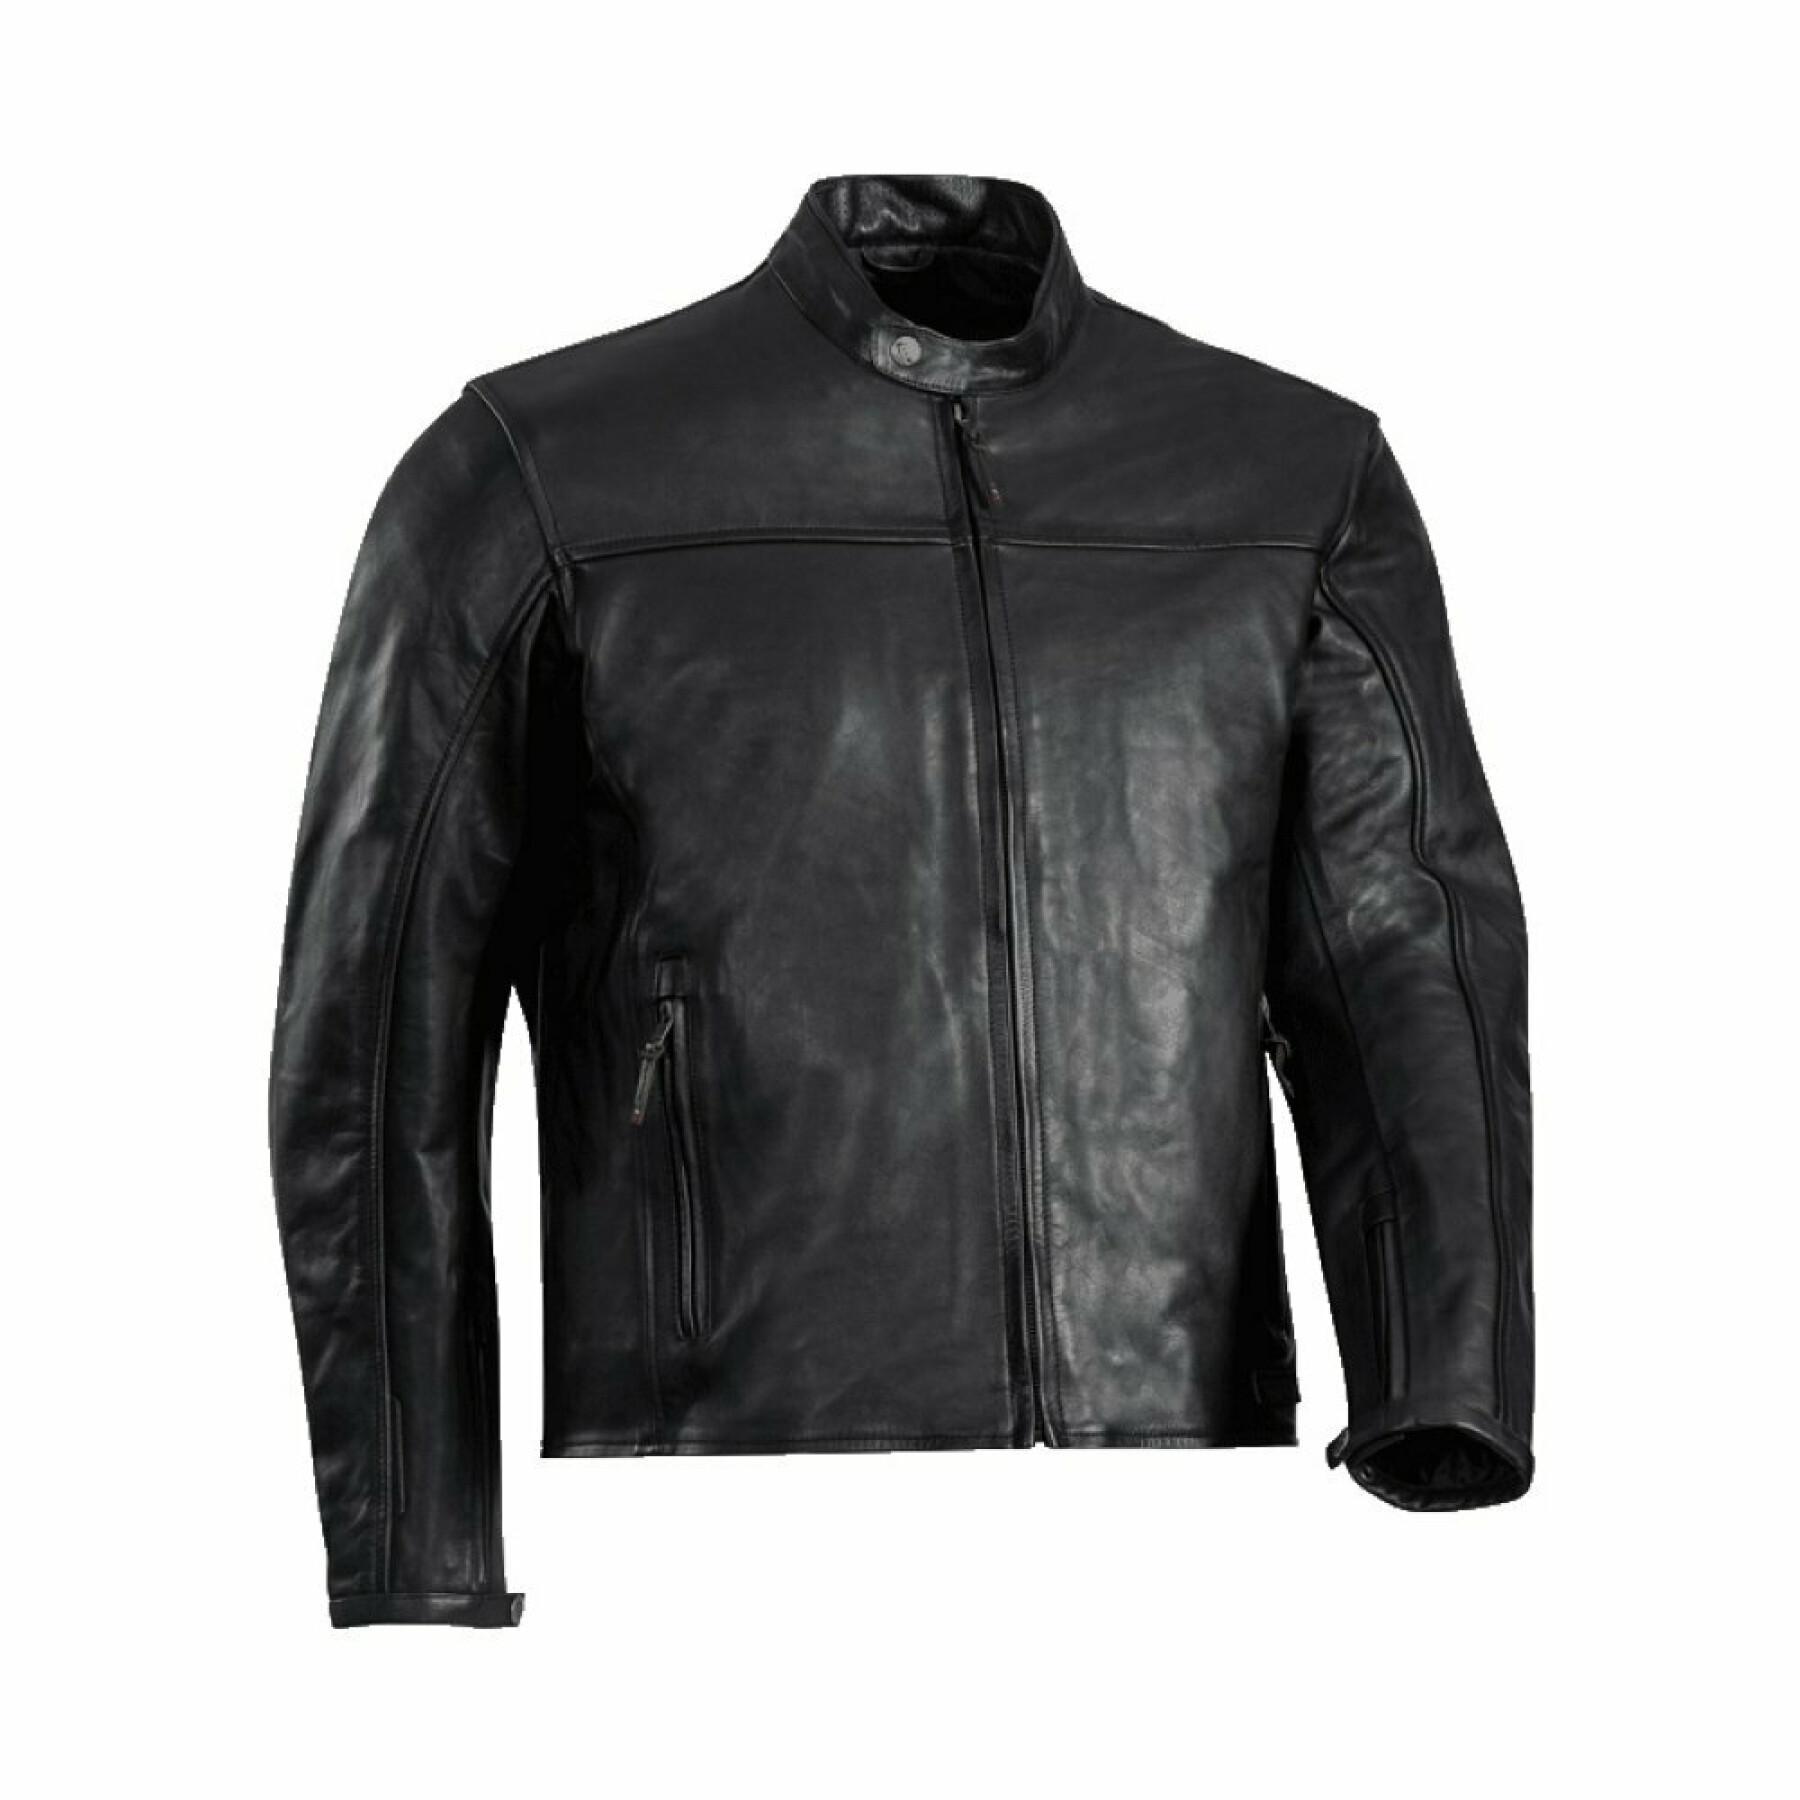 Leather motorcycle jacket Ixon crank c